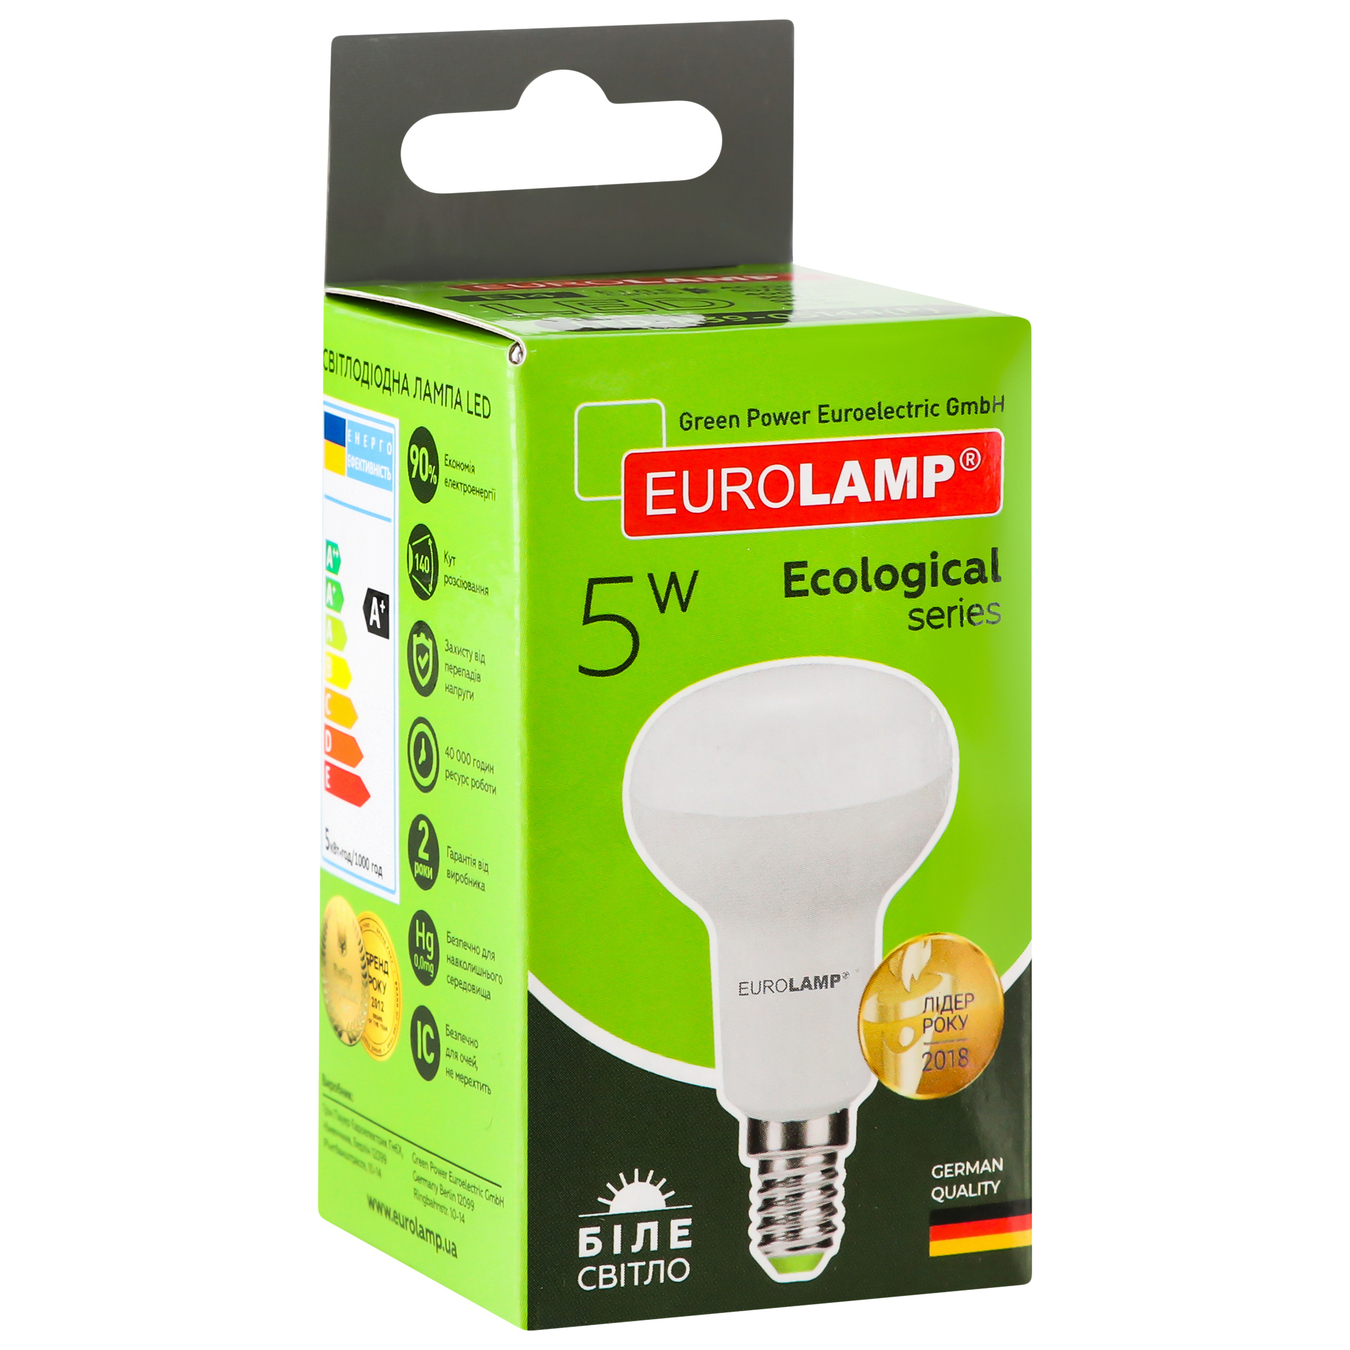 LED lamp Eurolamp eko P R39 5W 4000K E14 4